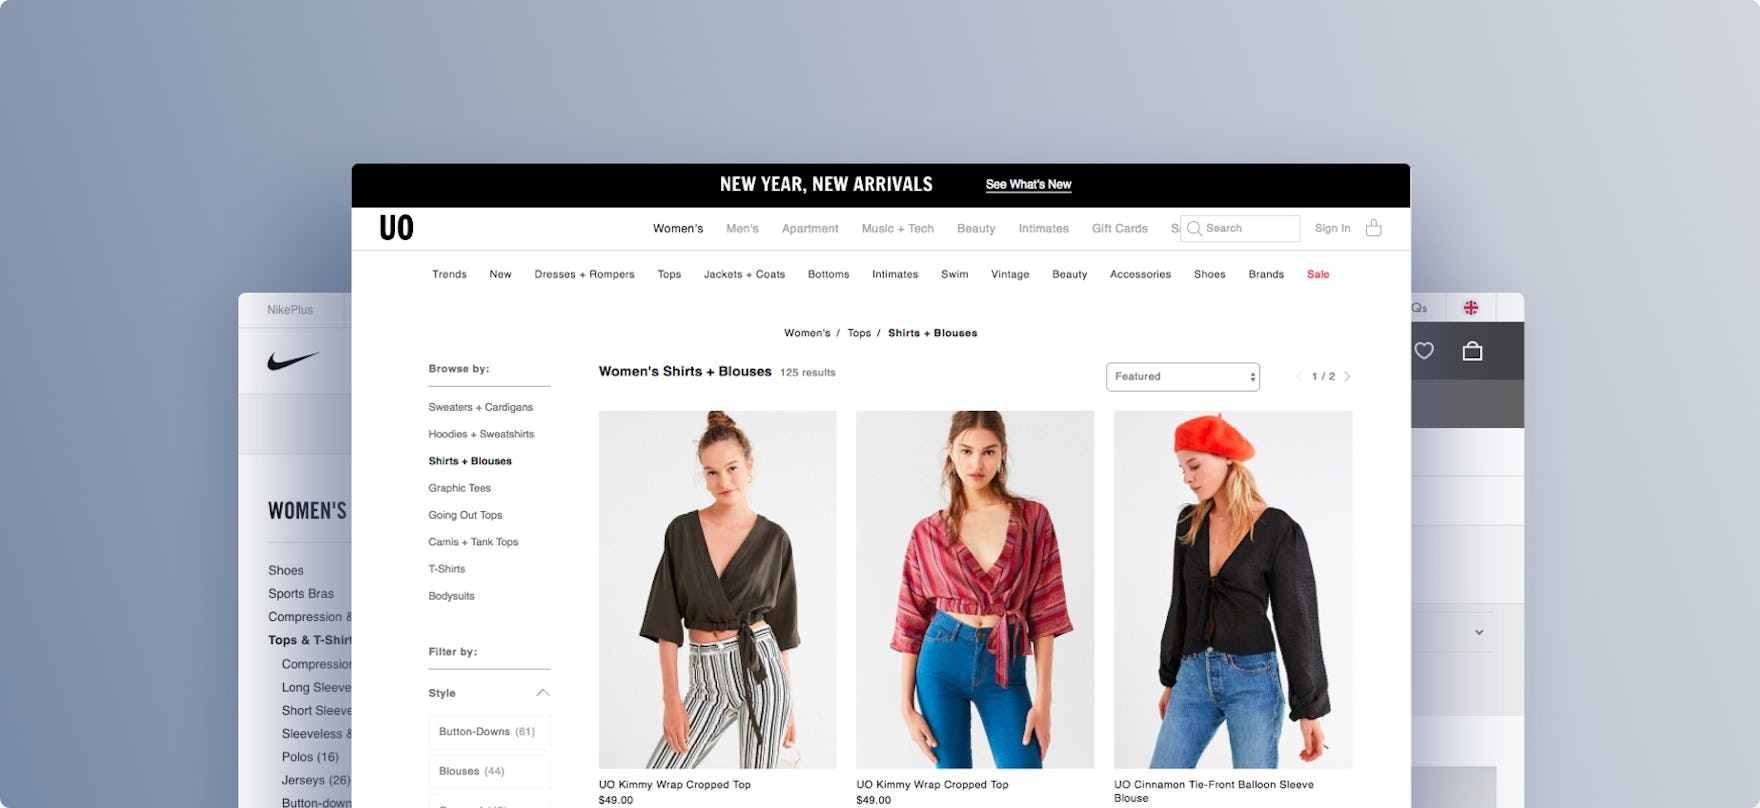 Louis Vuitton's E-Commerce UX Case Study – Baymard Institute